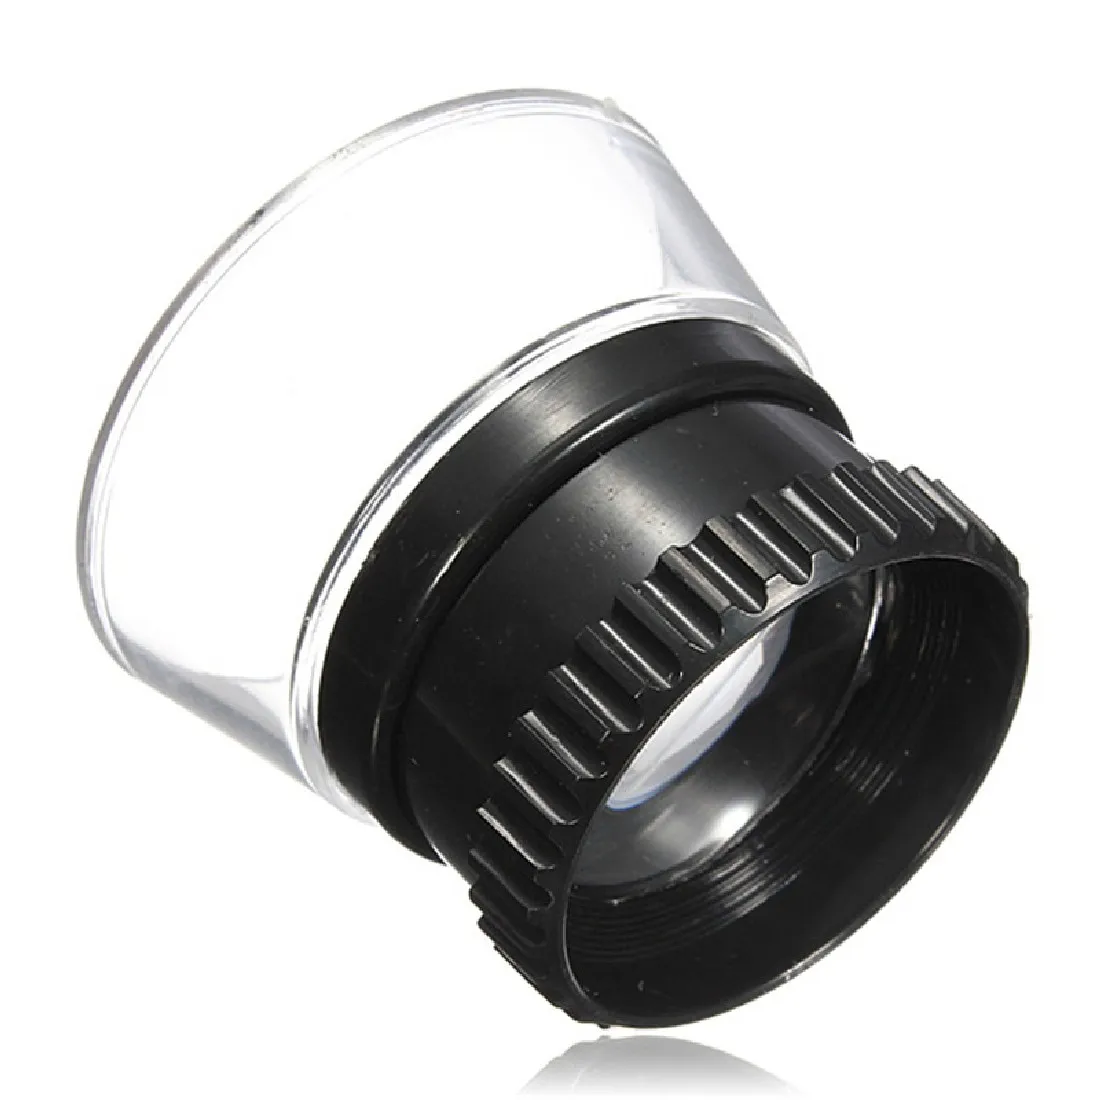 Arrvial портативный 15X Монокуляр увеличительное мини-микроскоп Стекло Лупа объектив Ювелирный инструмент глаз Лупа часы инструмент для ремонта